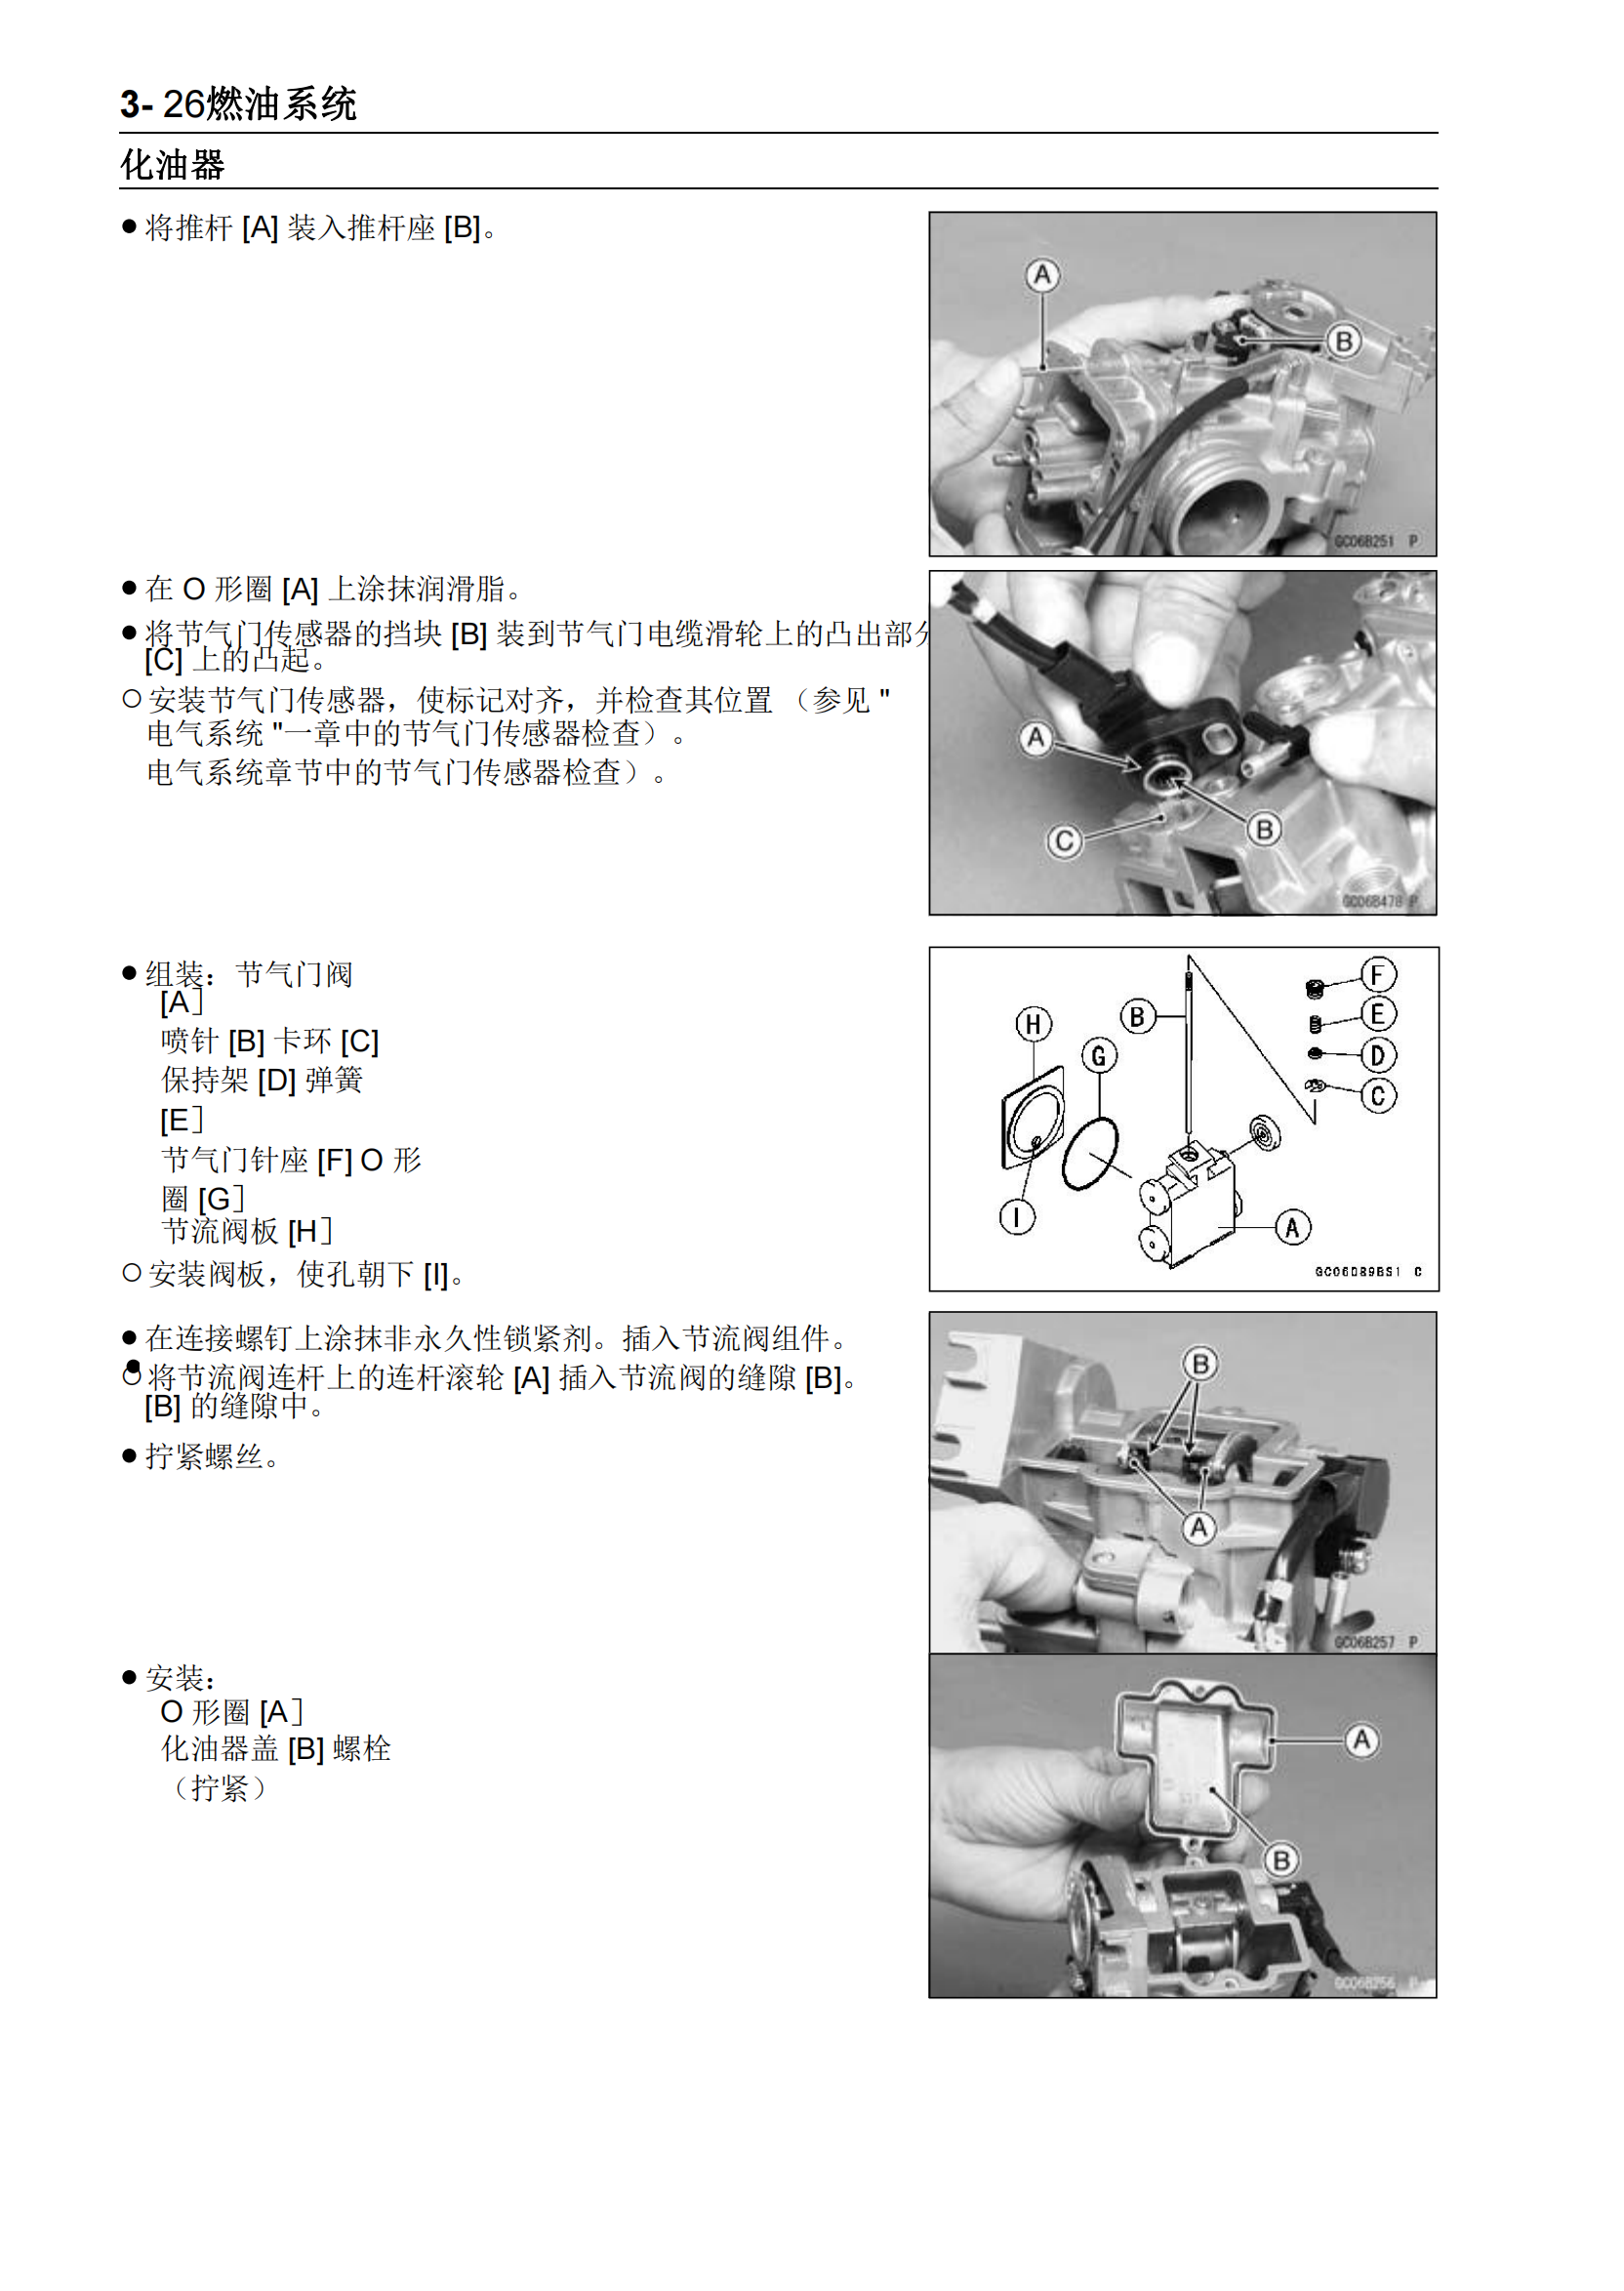 简体中文2006-2008年川崎kx250f维修手册 kawasaki kx250f维修手册插图4